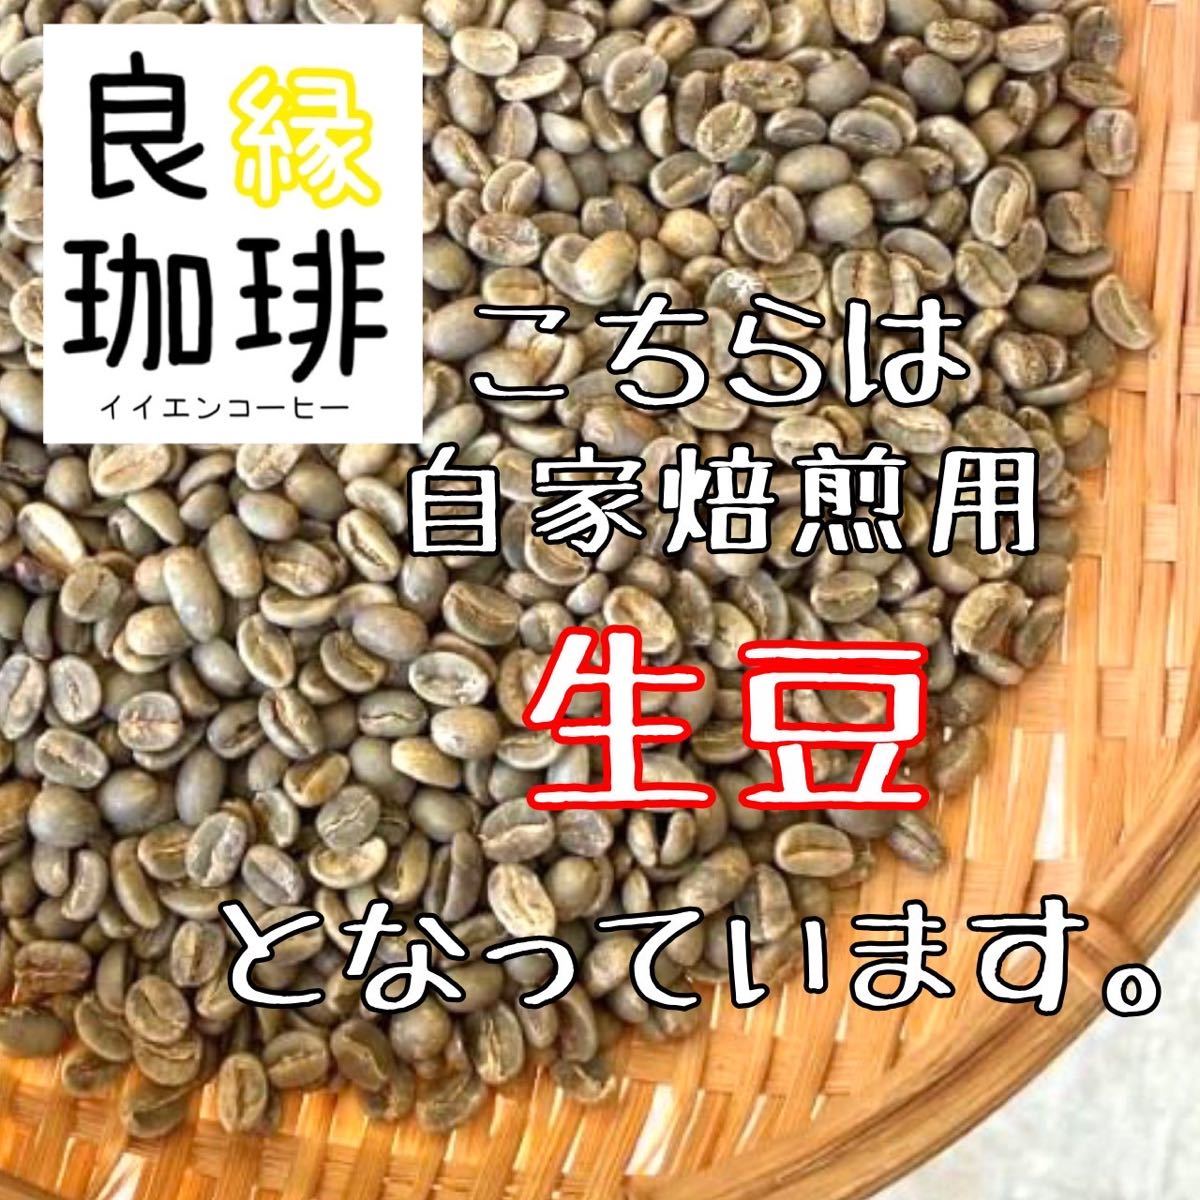 【最安値】生豆 ブラジル クィーンショコラ Qグレード 200g コーヒー豆